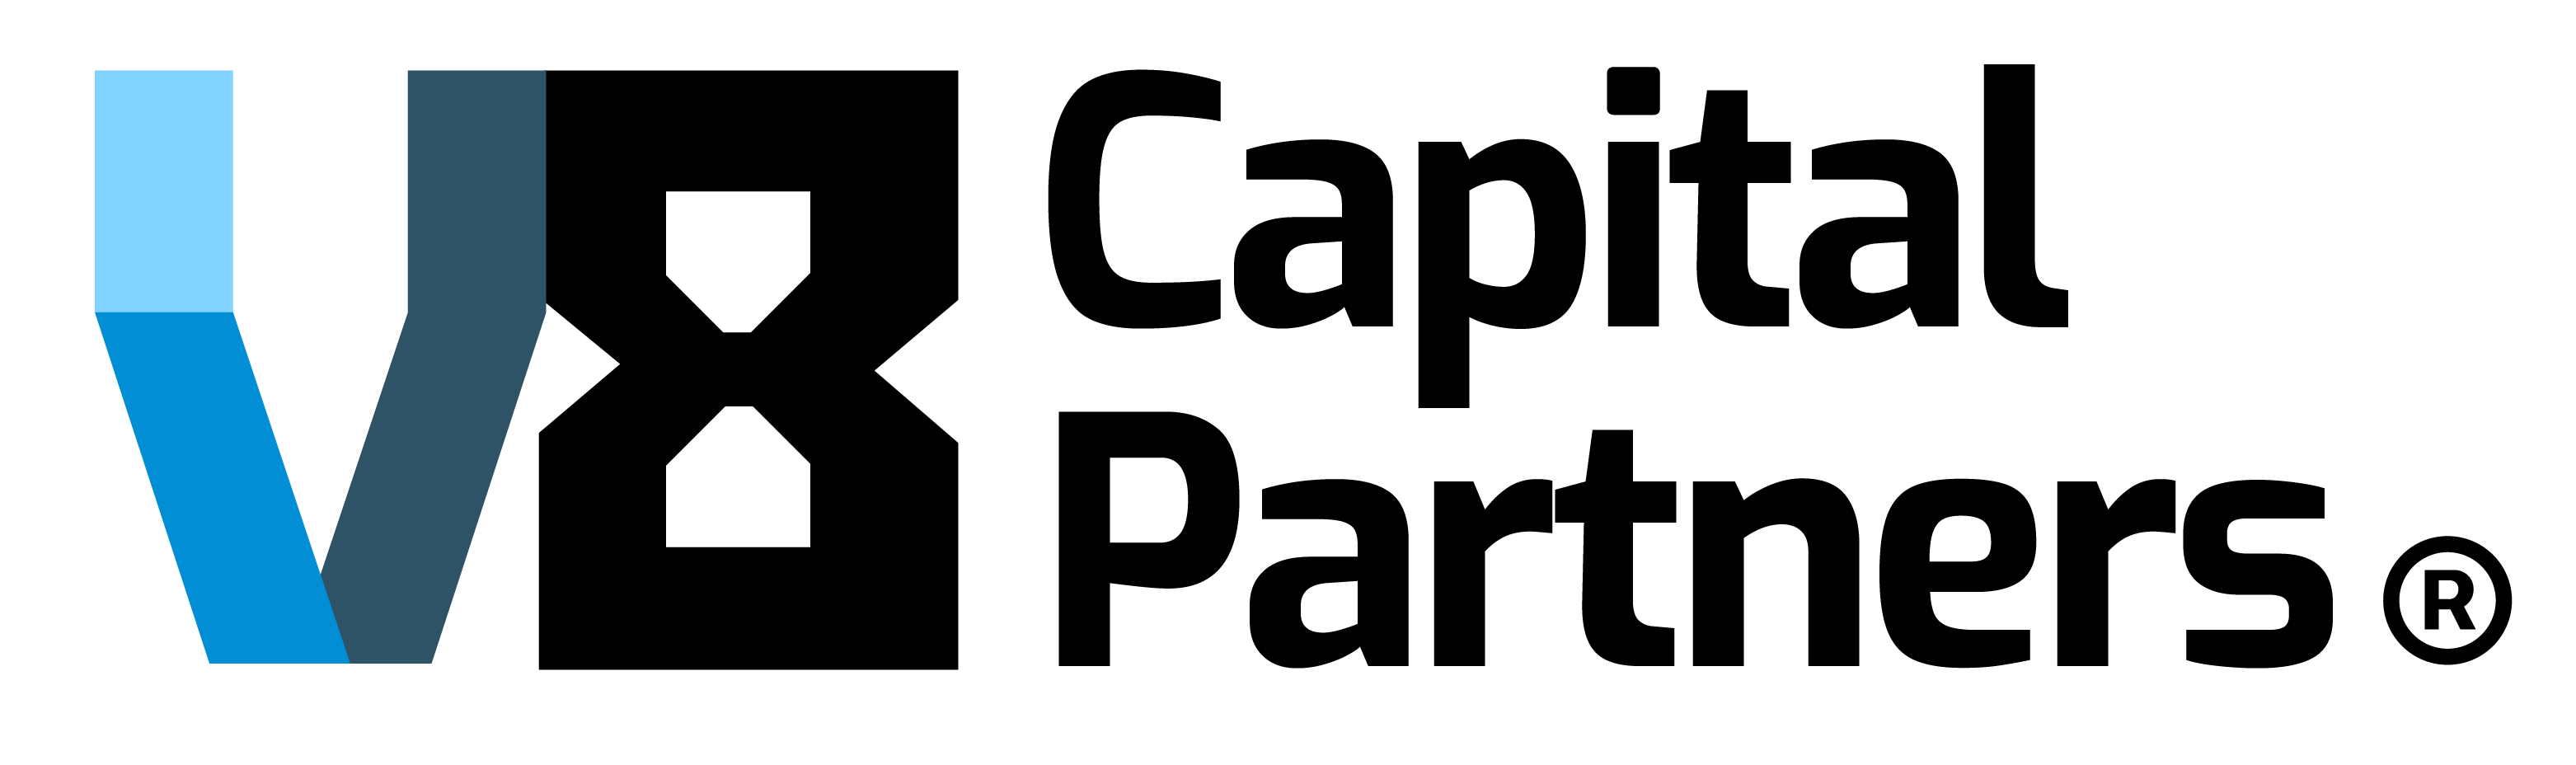 v8cap-logo